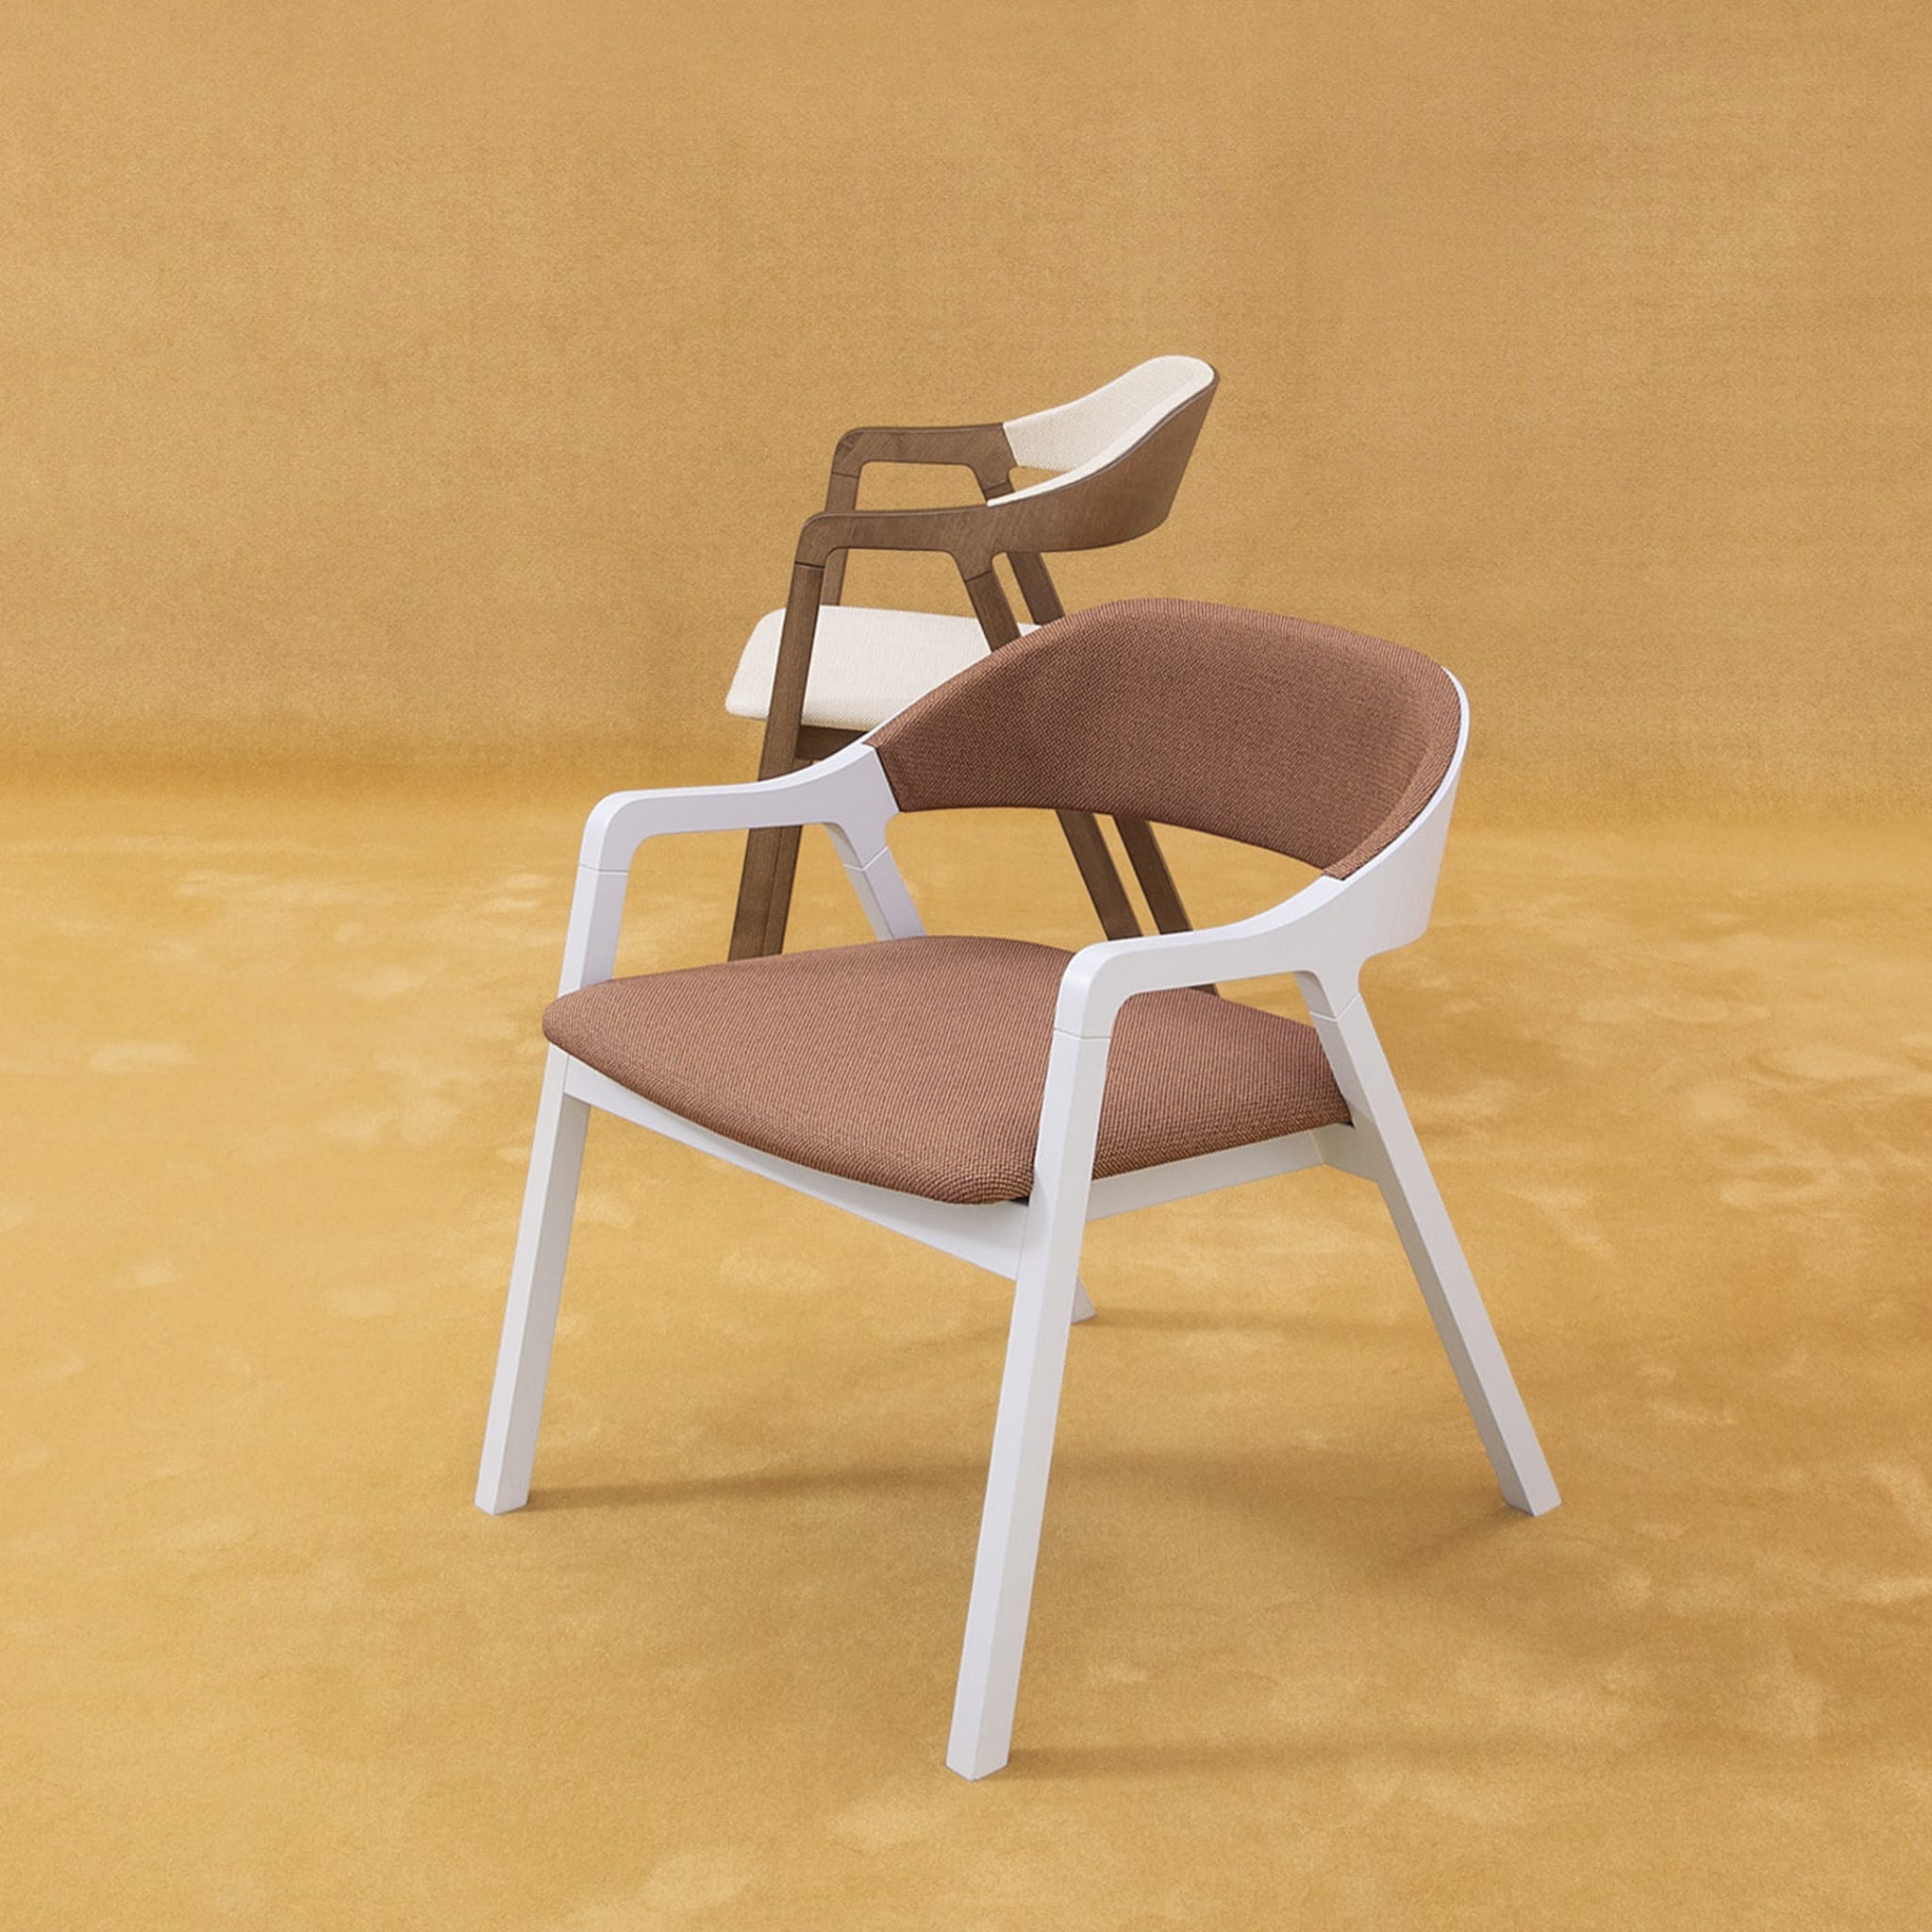 Layer Chair by Michael Geldmacher - Alternative view 3